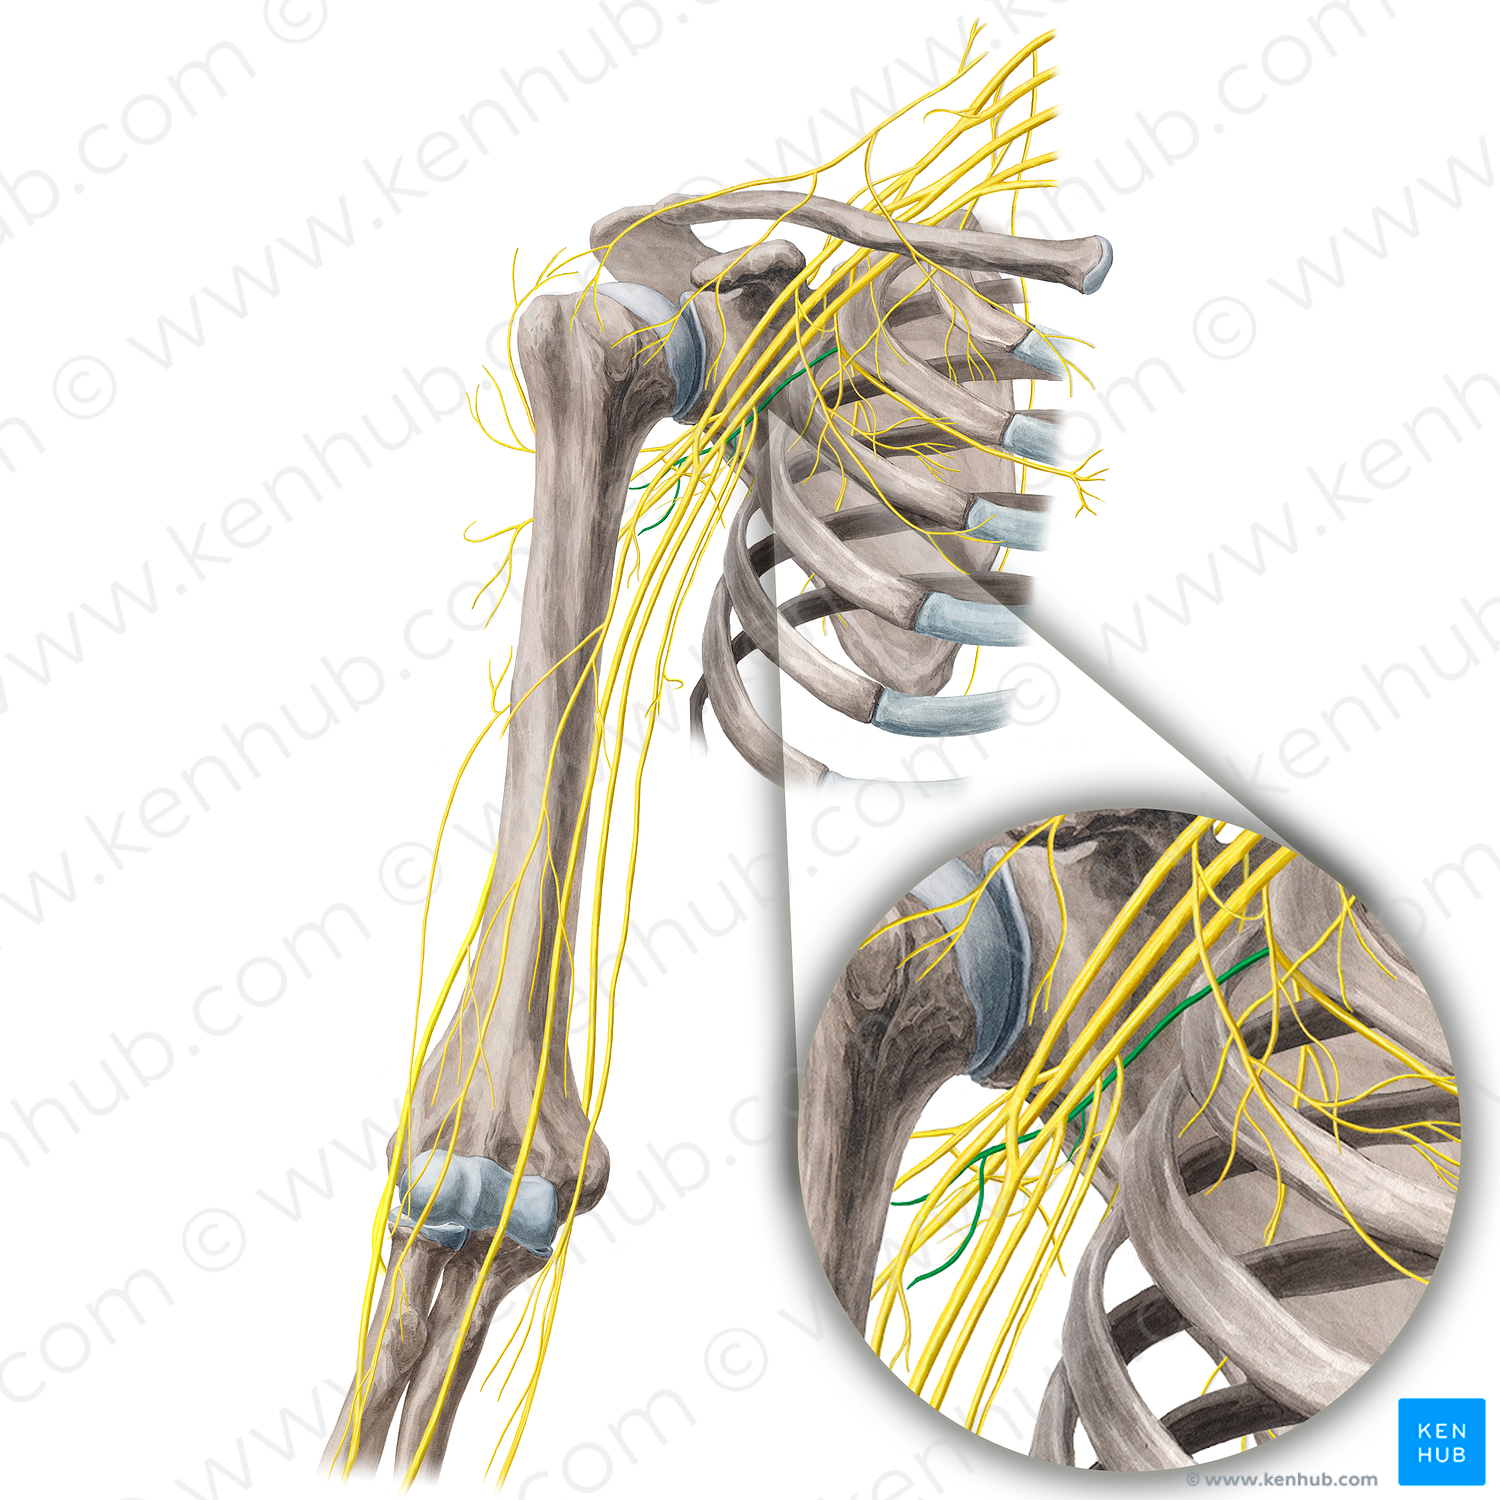 Intercostobrachial nerve (#21675)